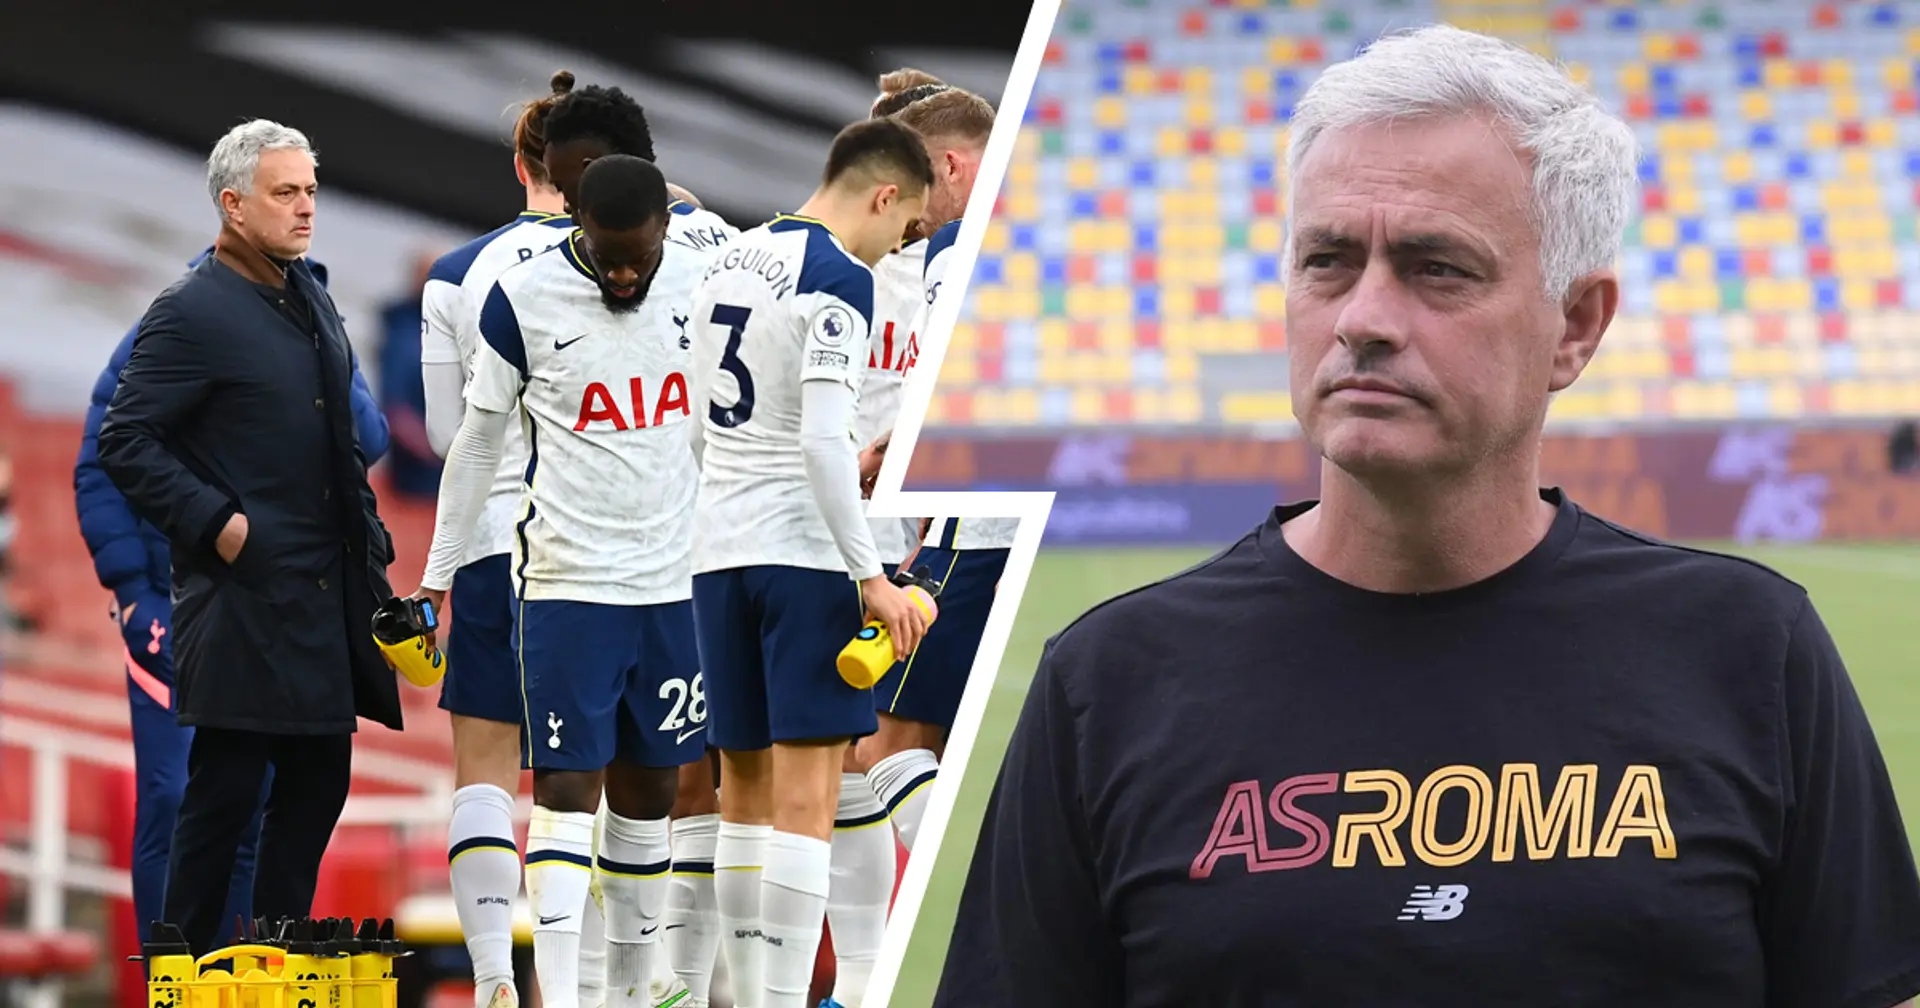 L'evoluzione tattica di Mourinho alla Roma dopo l'esperienza al Tottenham